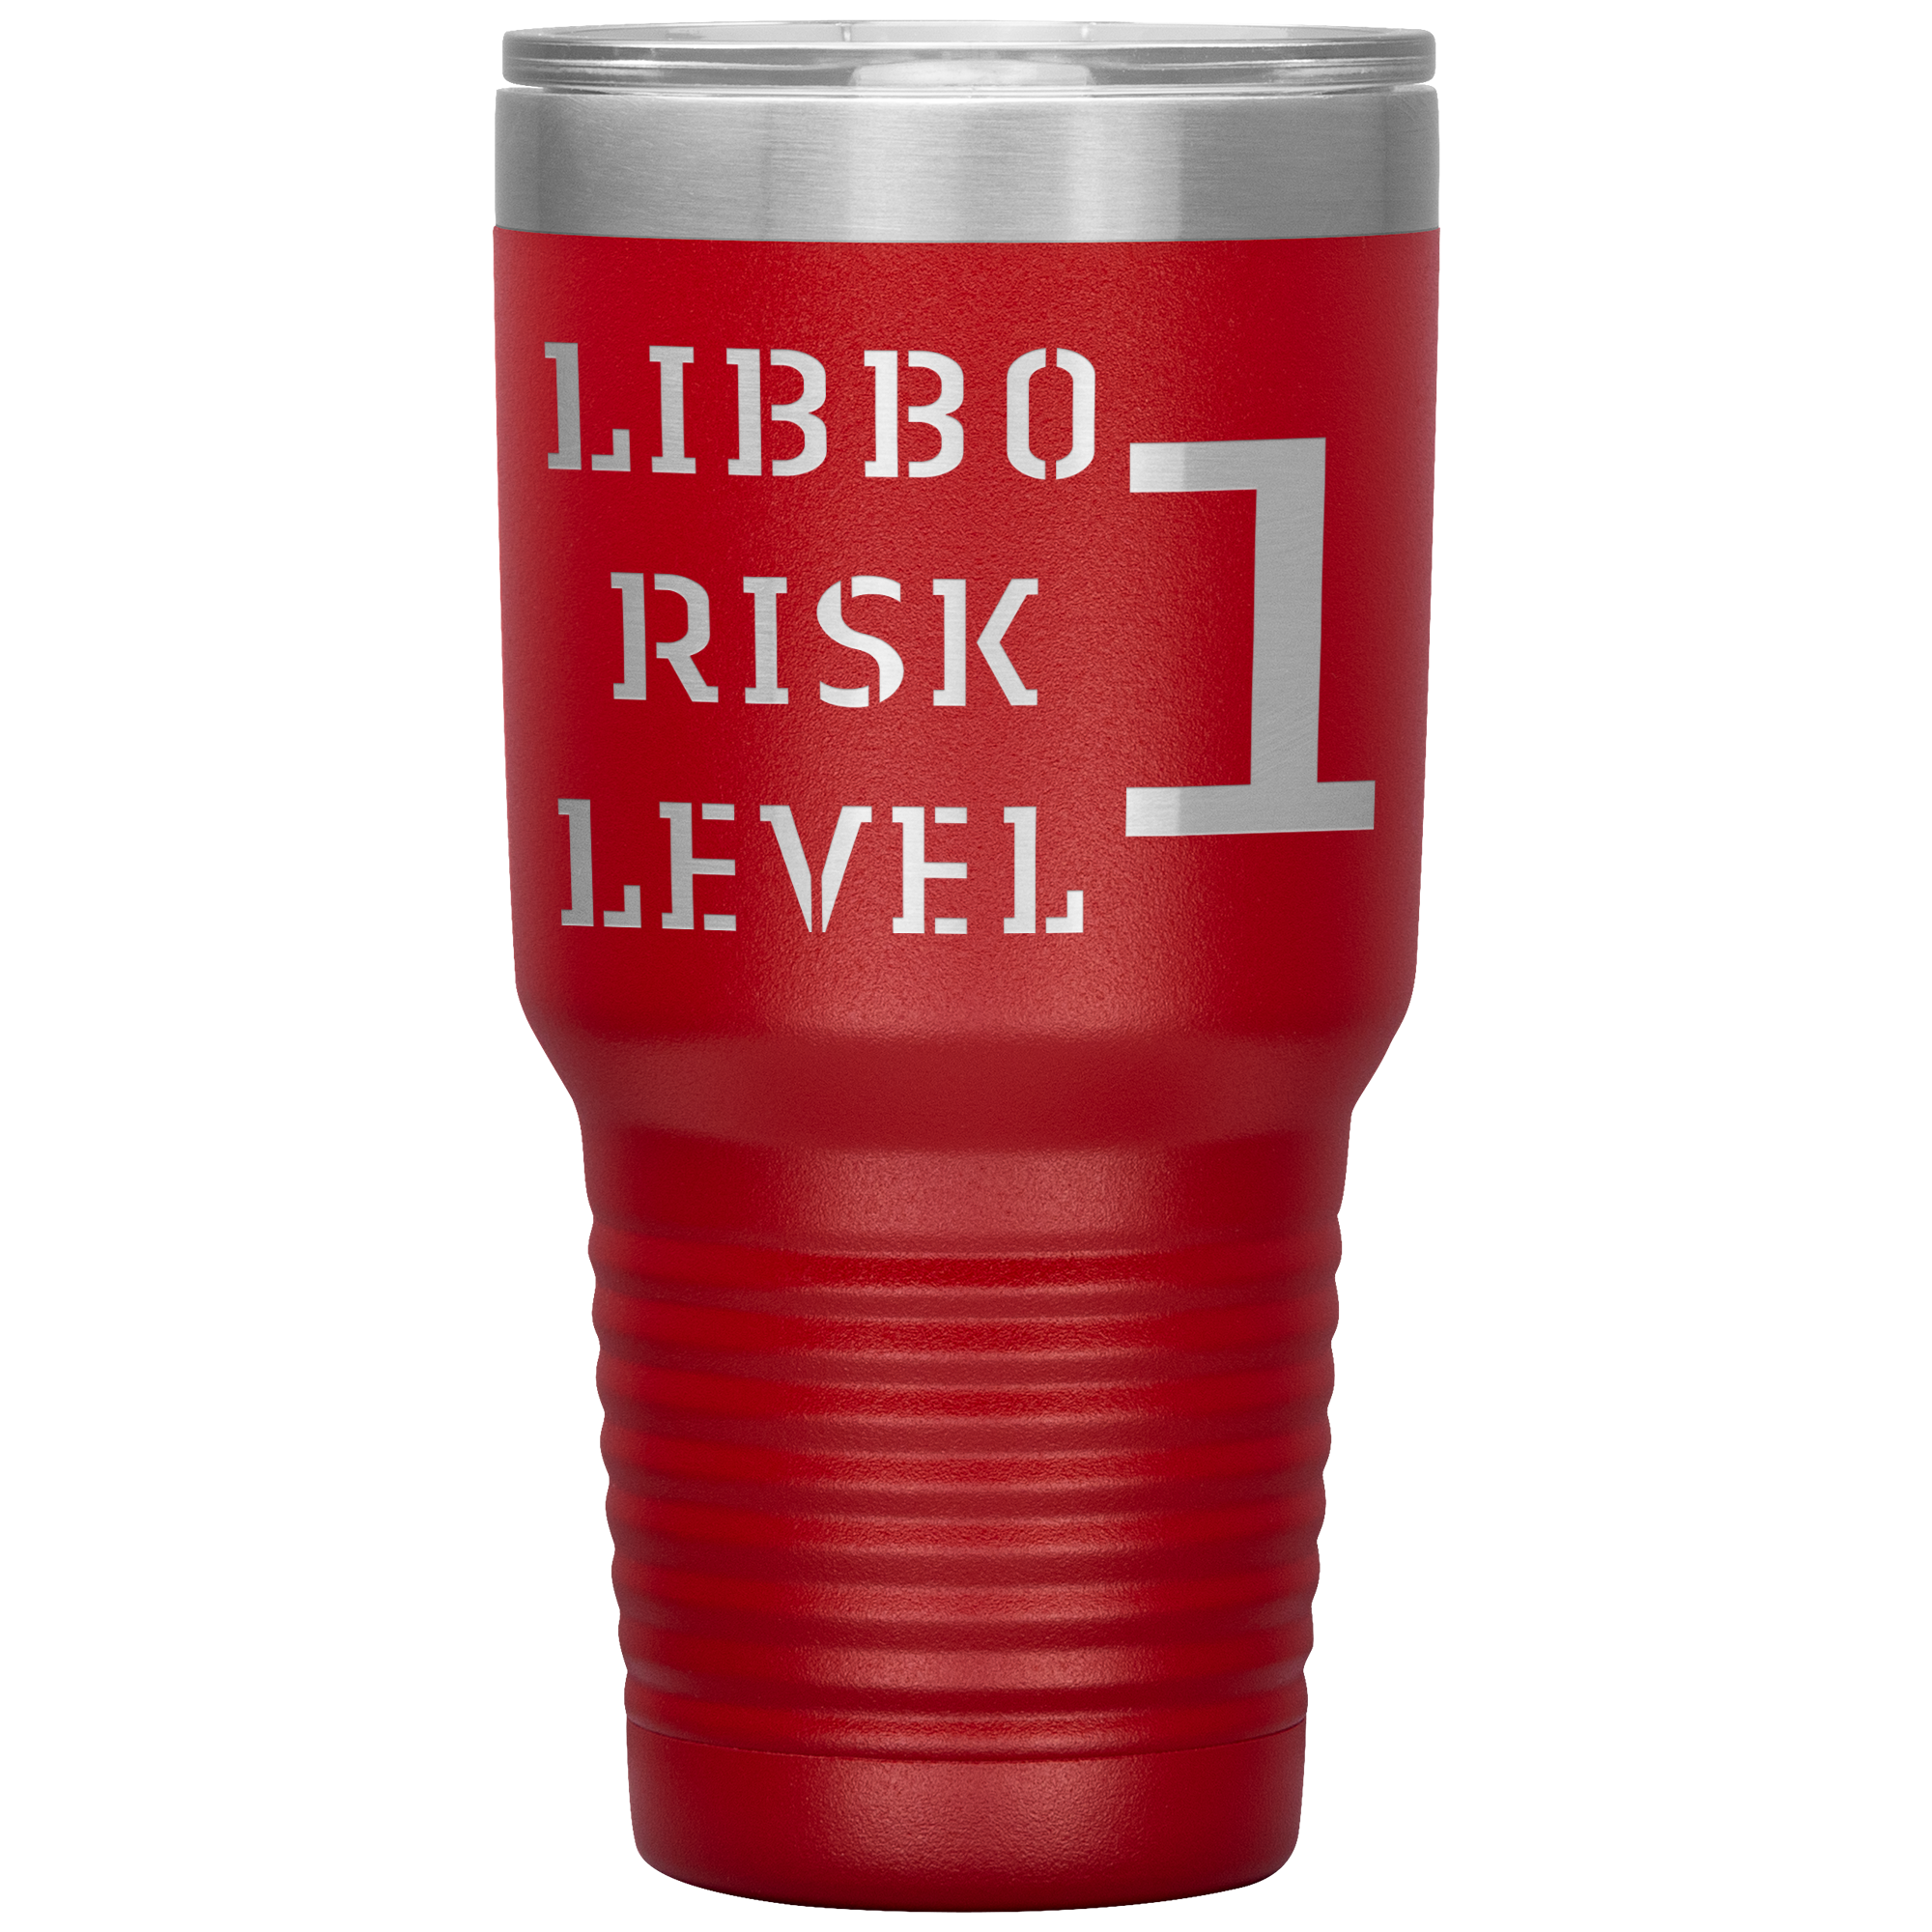 LIBBO RISK LEVEL 1 30 oz TUMBLER